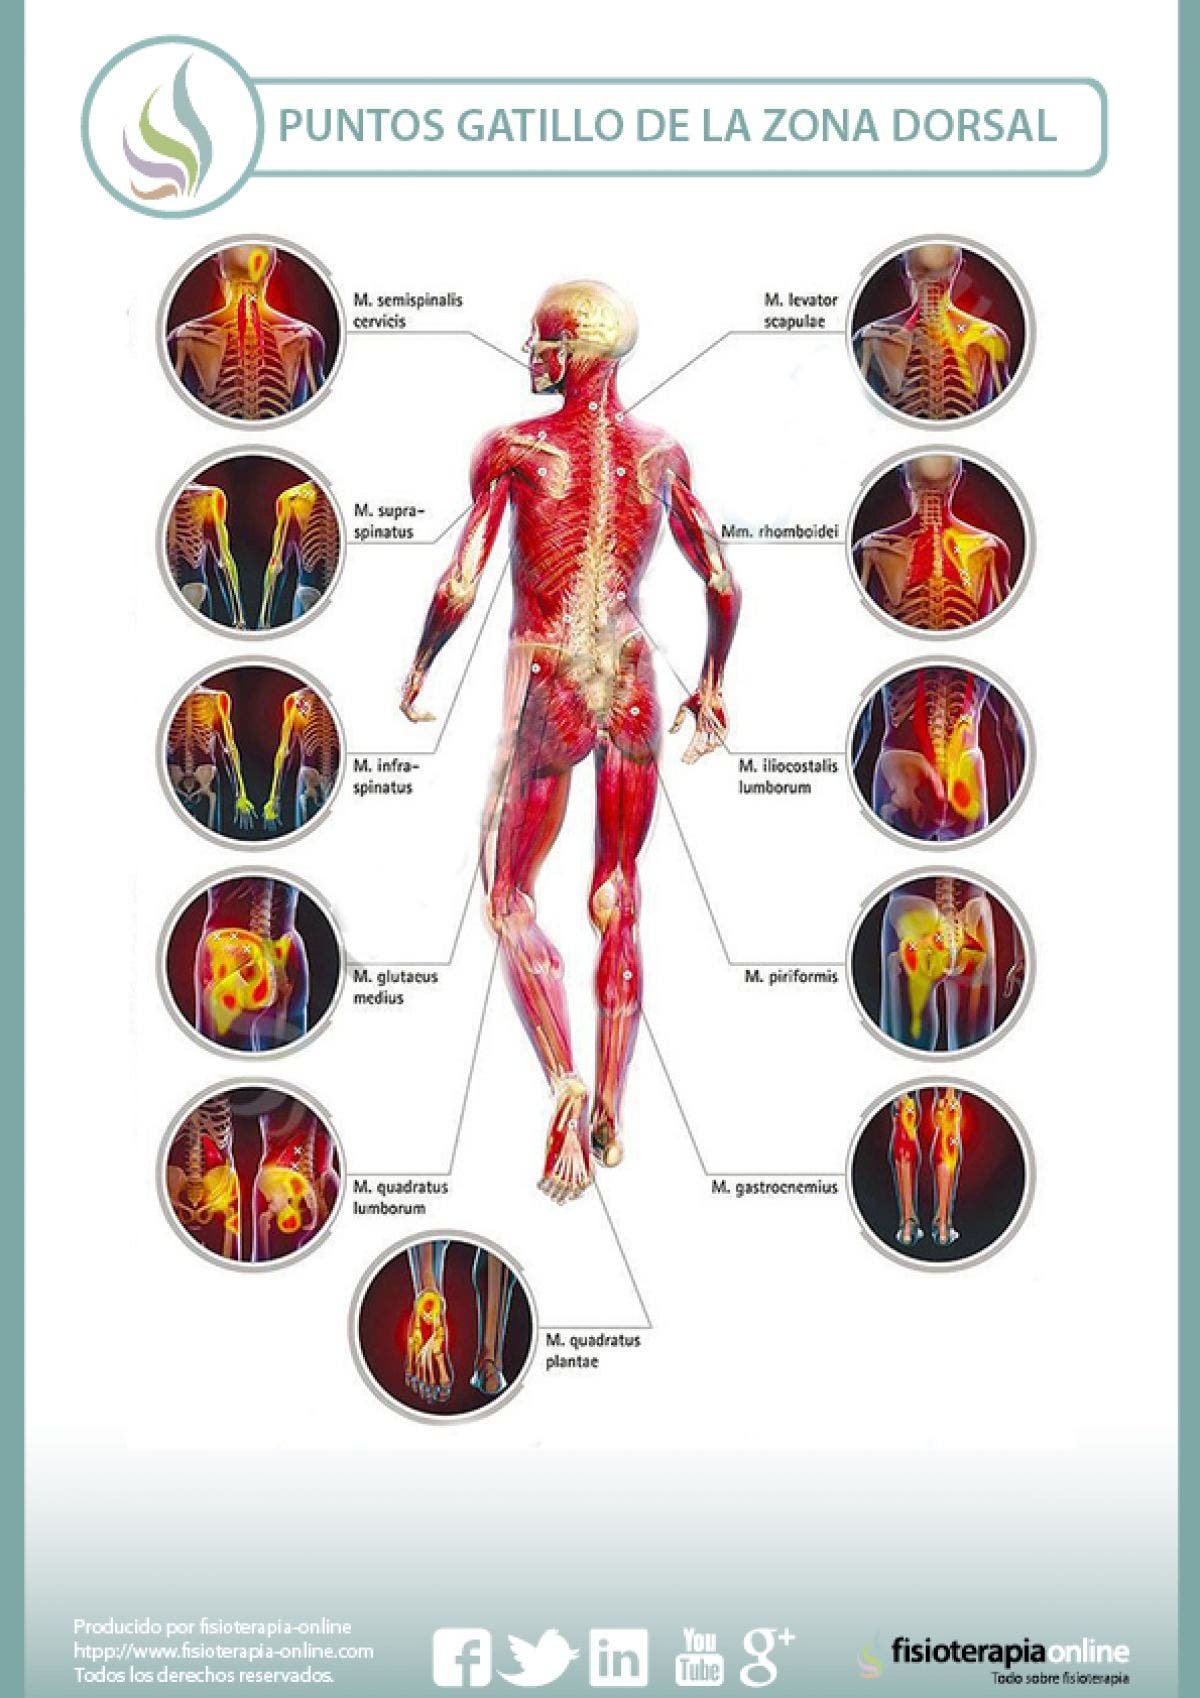 Puntos gatillo de la zona dorsal, los causantes musculares de la dorsalgia